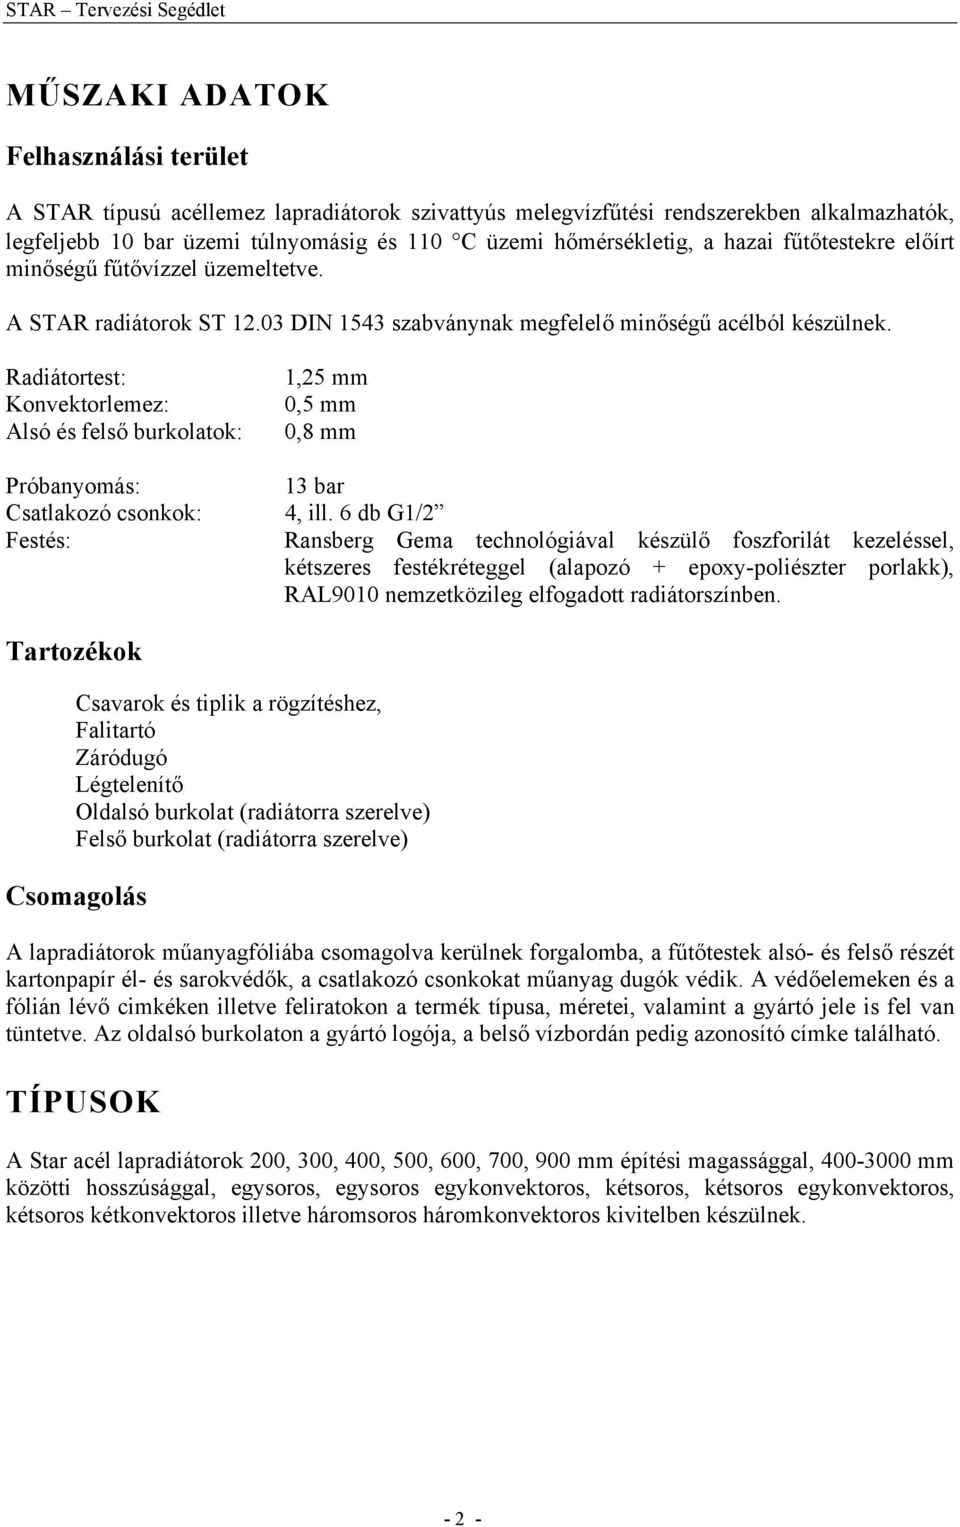 TERVEZÉSI SEGÉDLET. STAR típusú acéllemez lapradiátorokhoz - PDF Ingyenes  letöltés